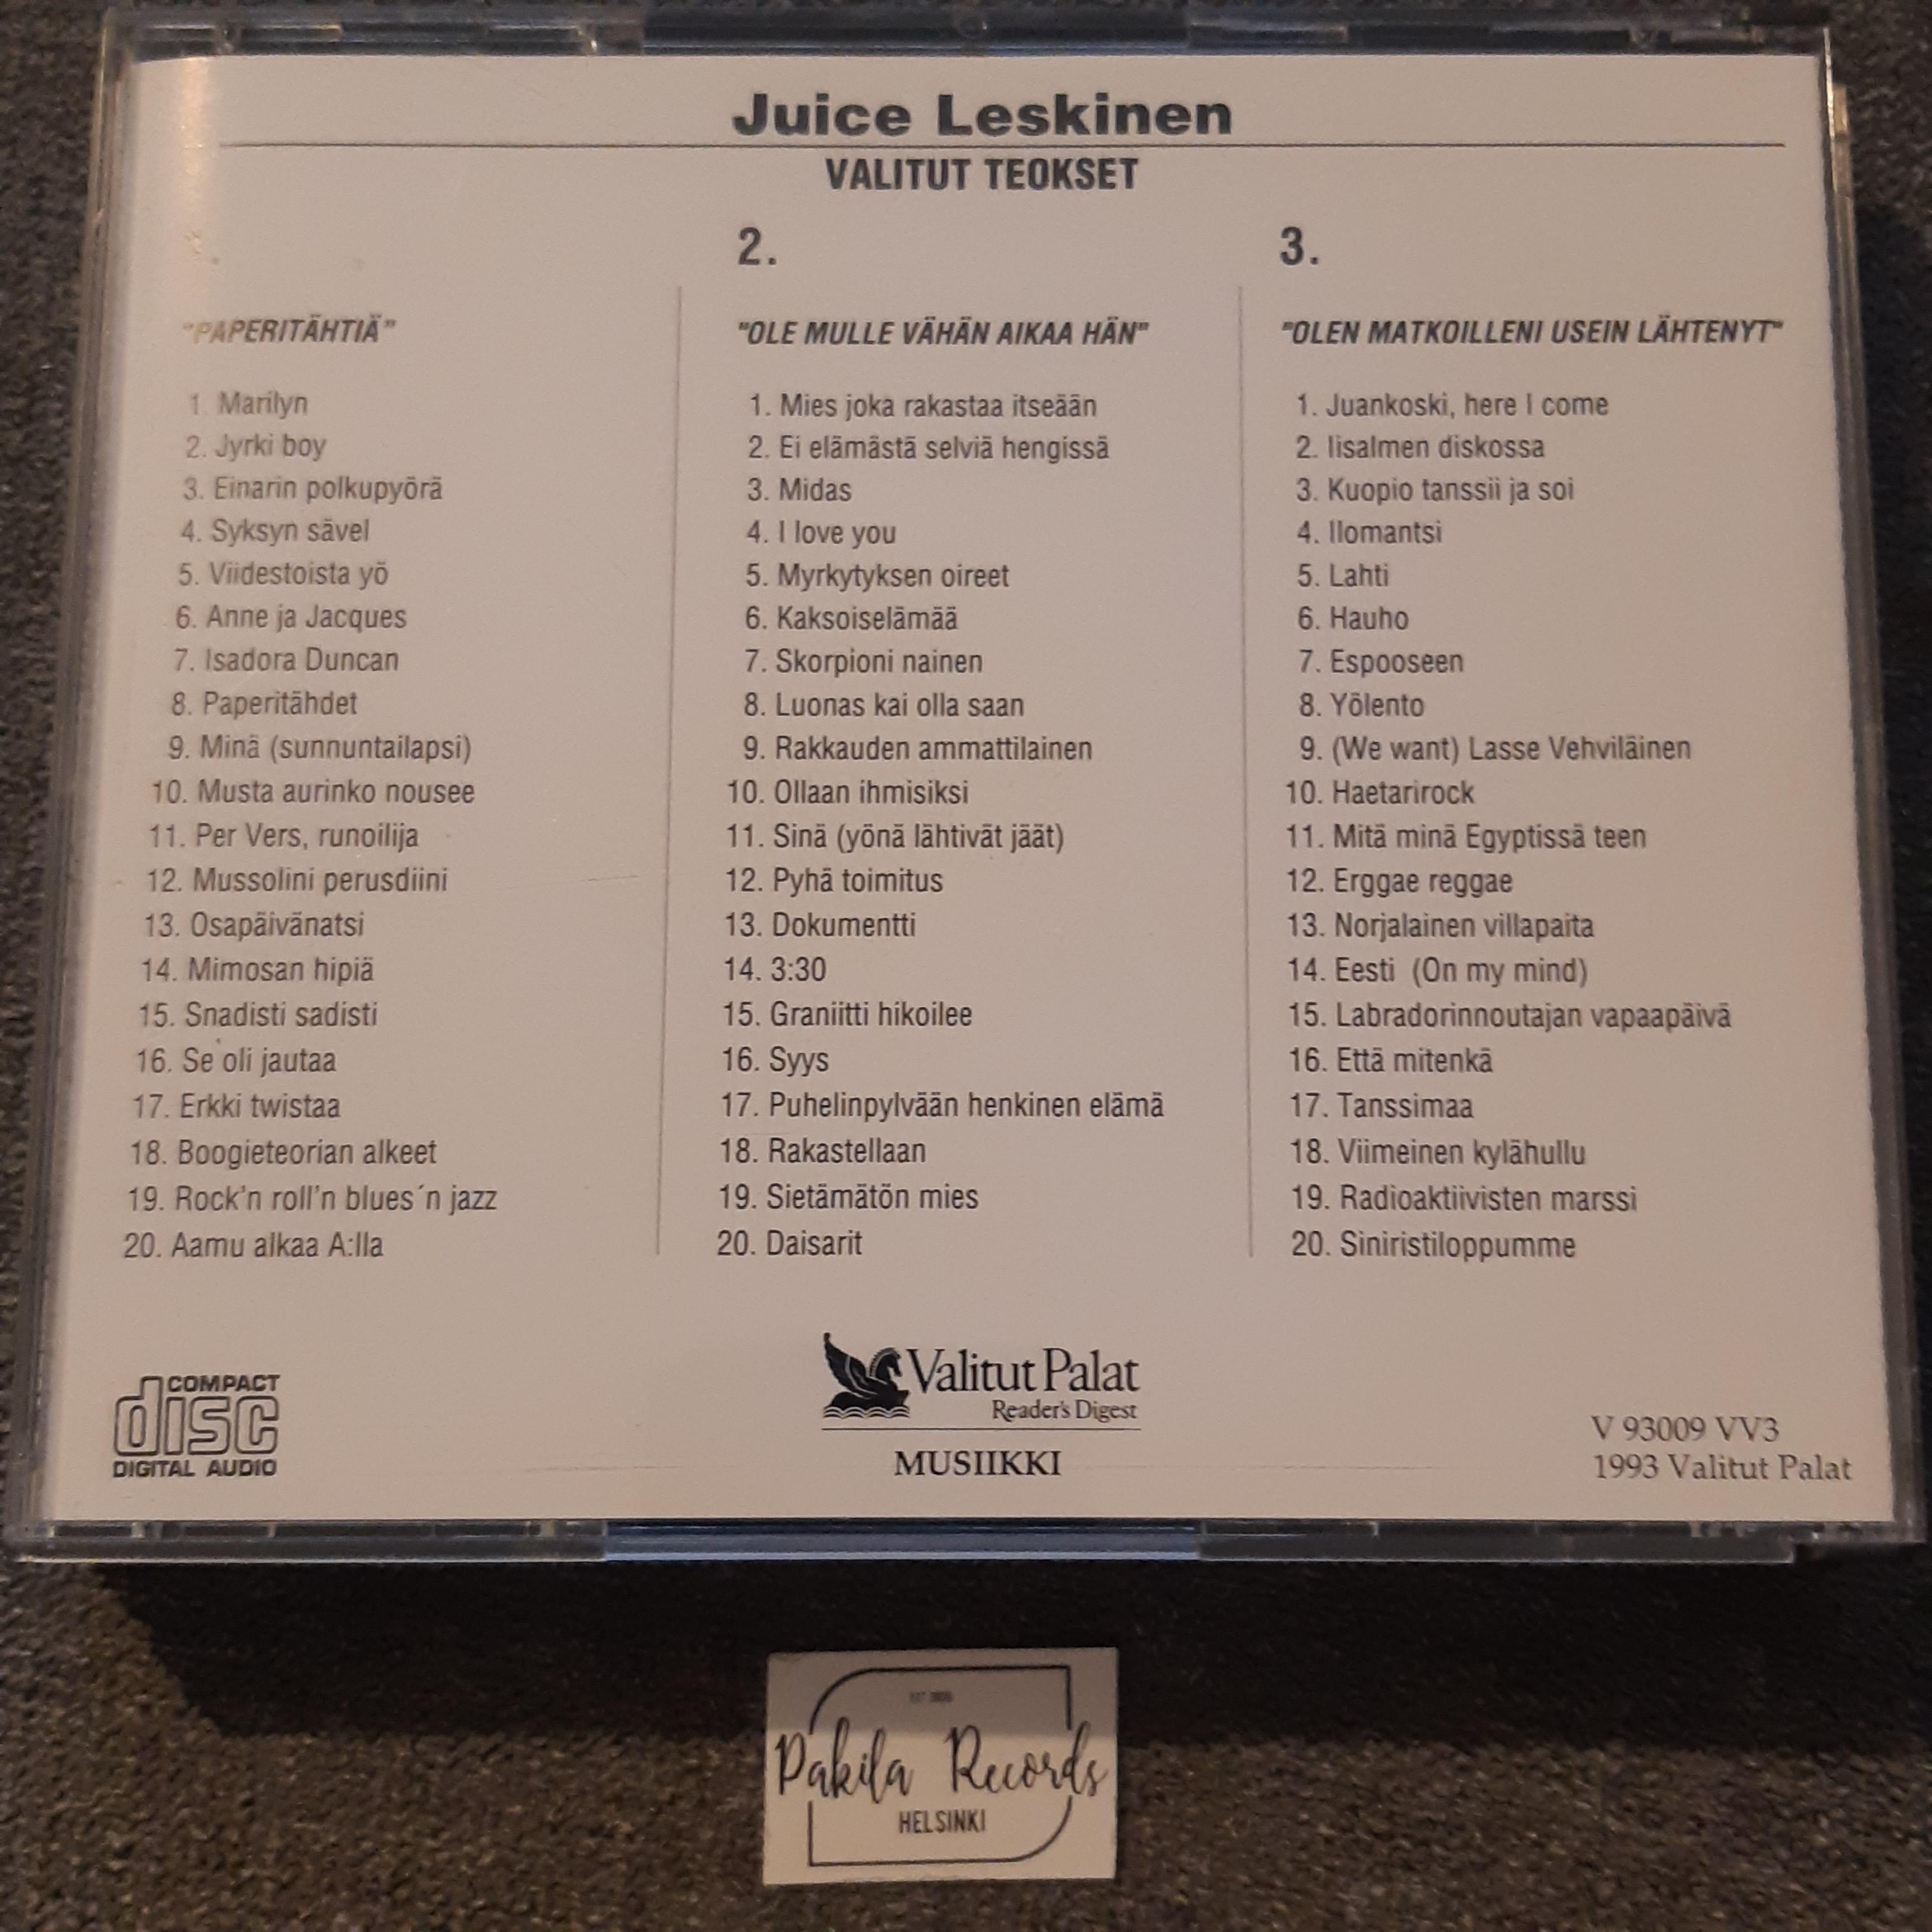 Juice Leskinen - Valitut teokset - 3 CD (käytetty)